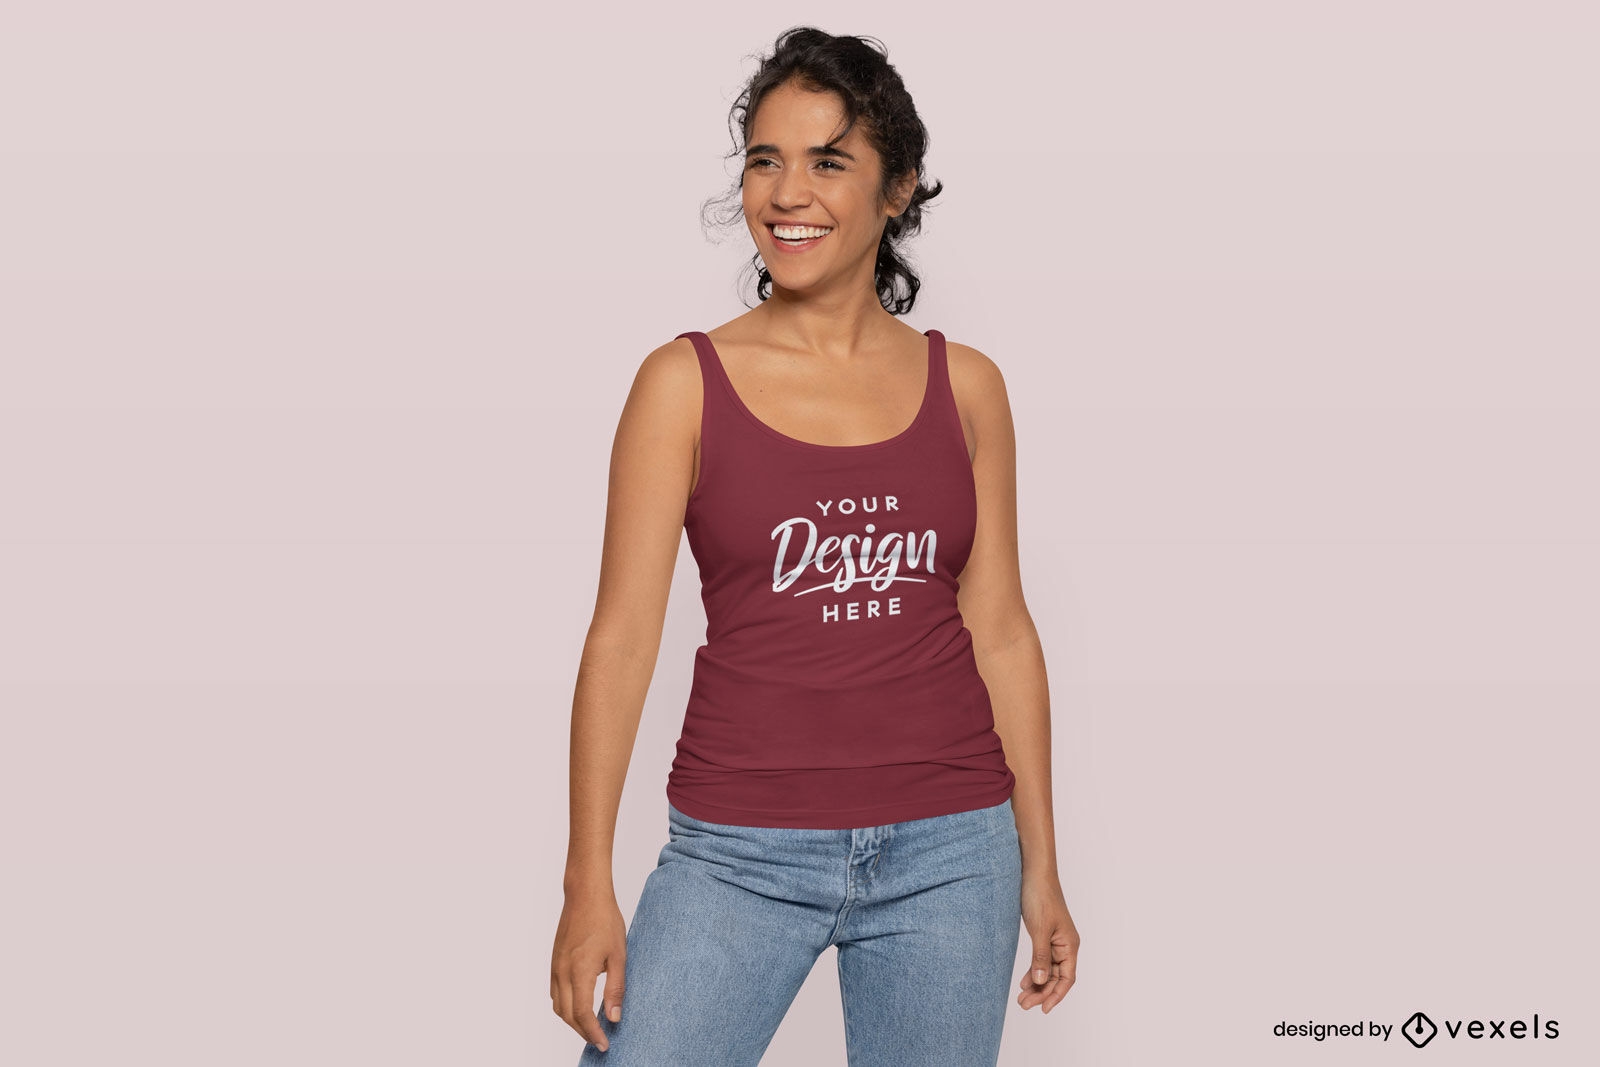 Mujer sonriendo en maqueta de camiseta sin mangas